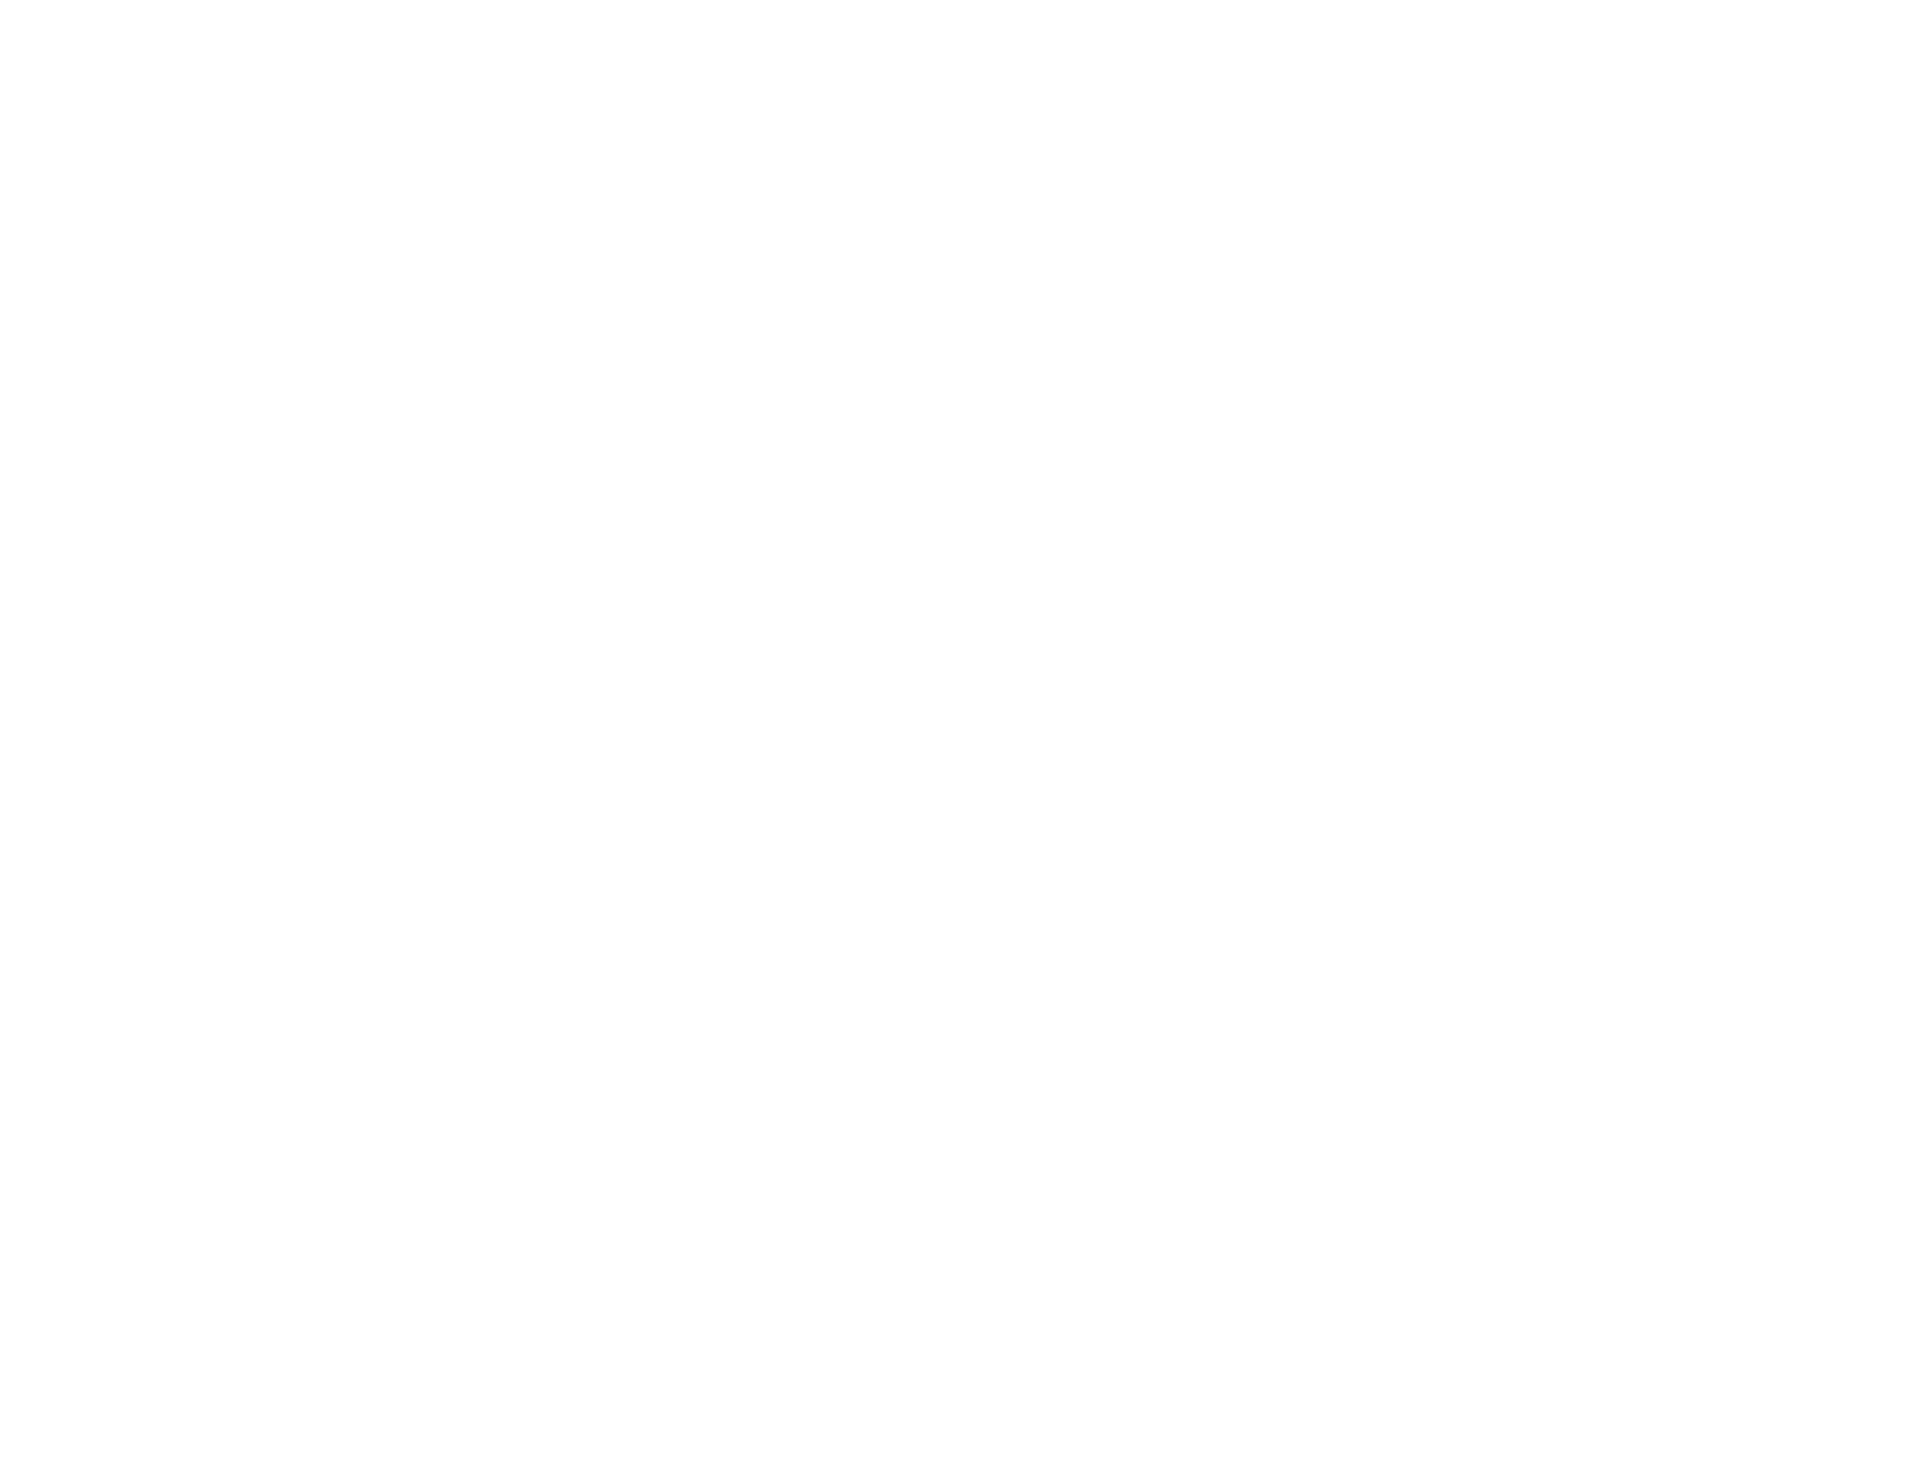 FUEGO AZTECA